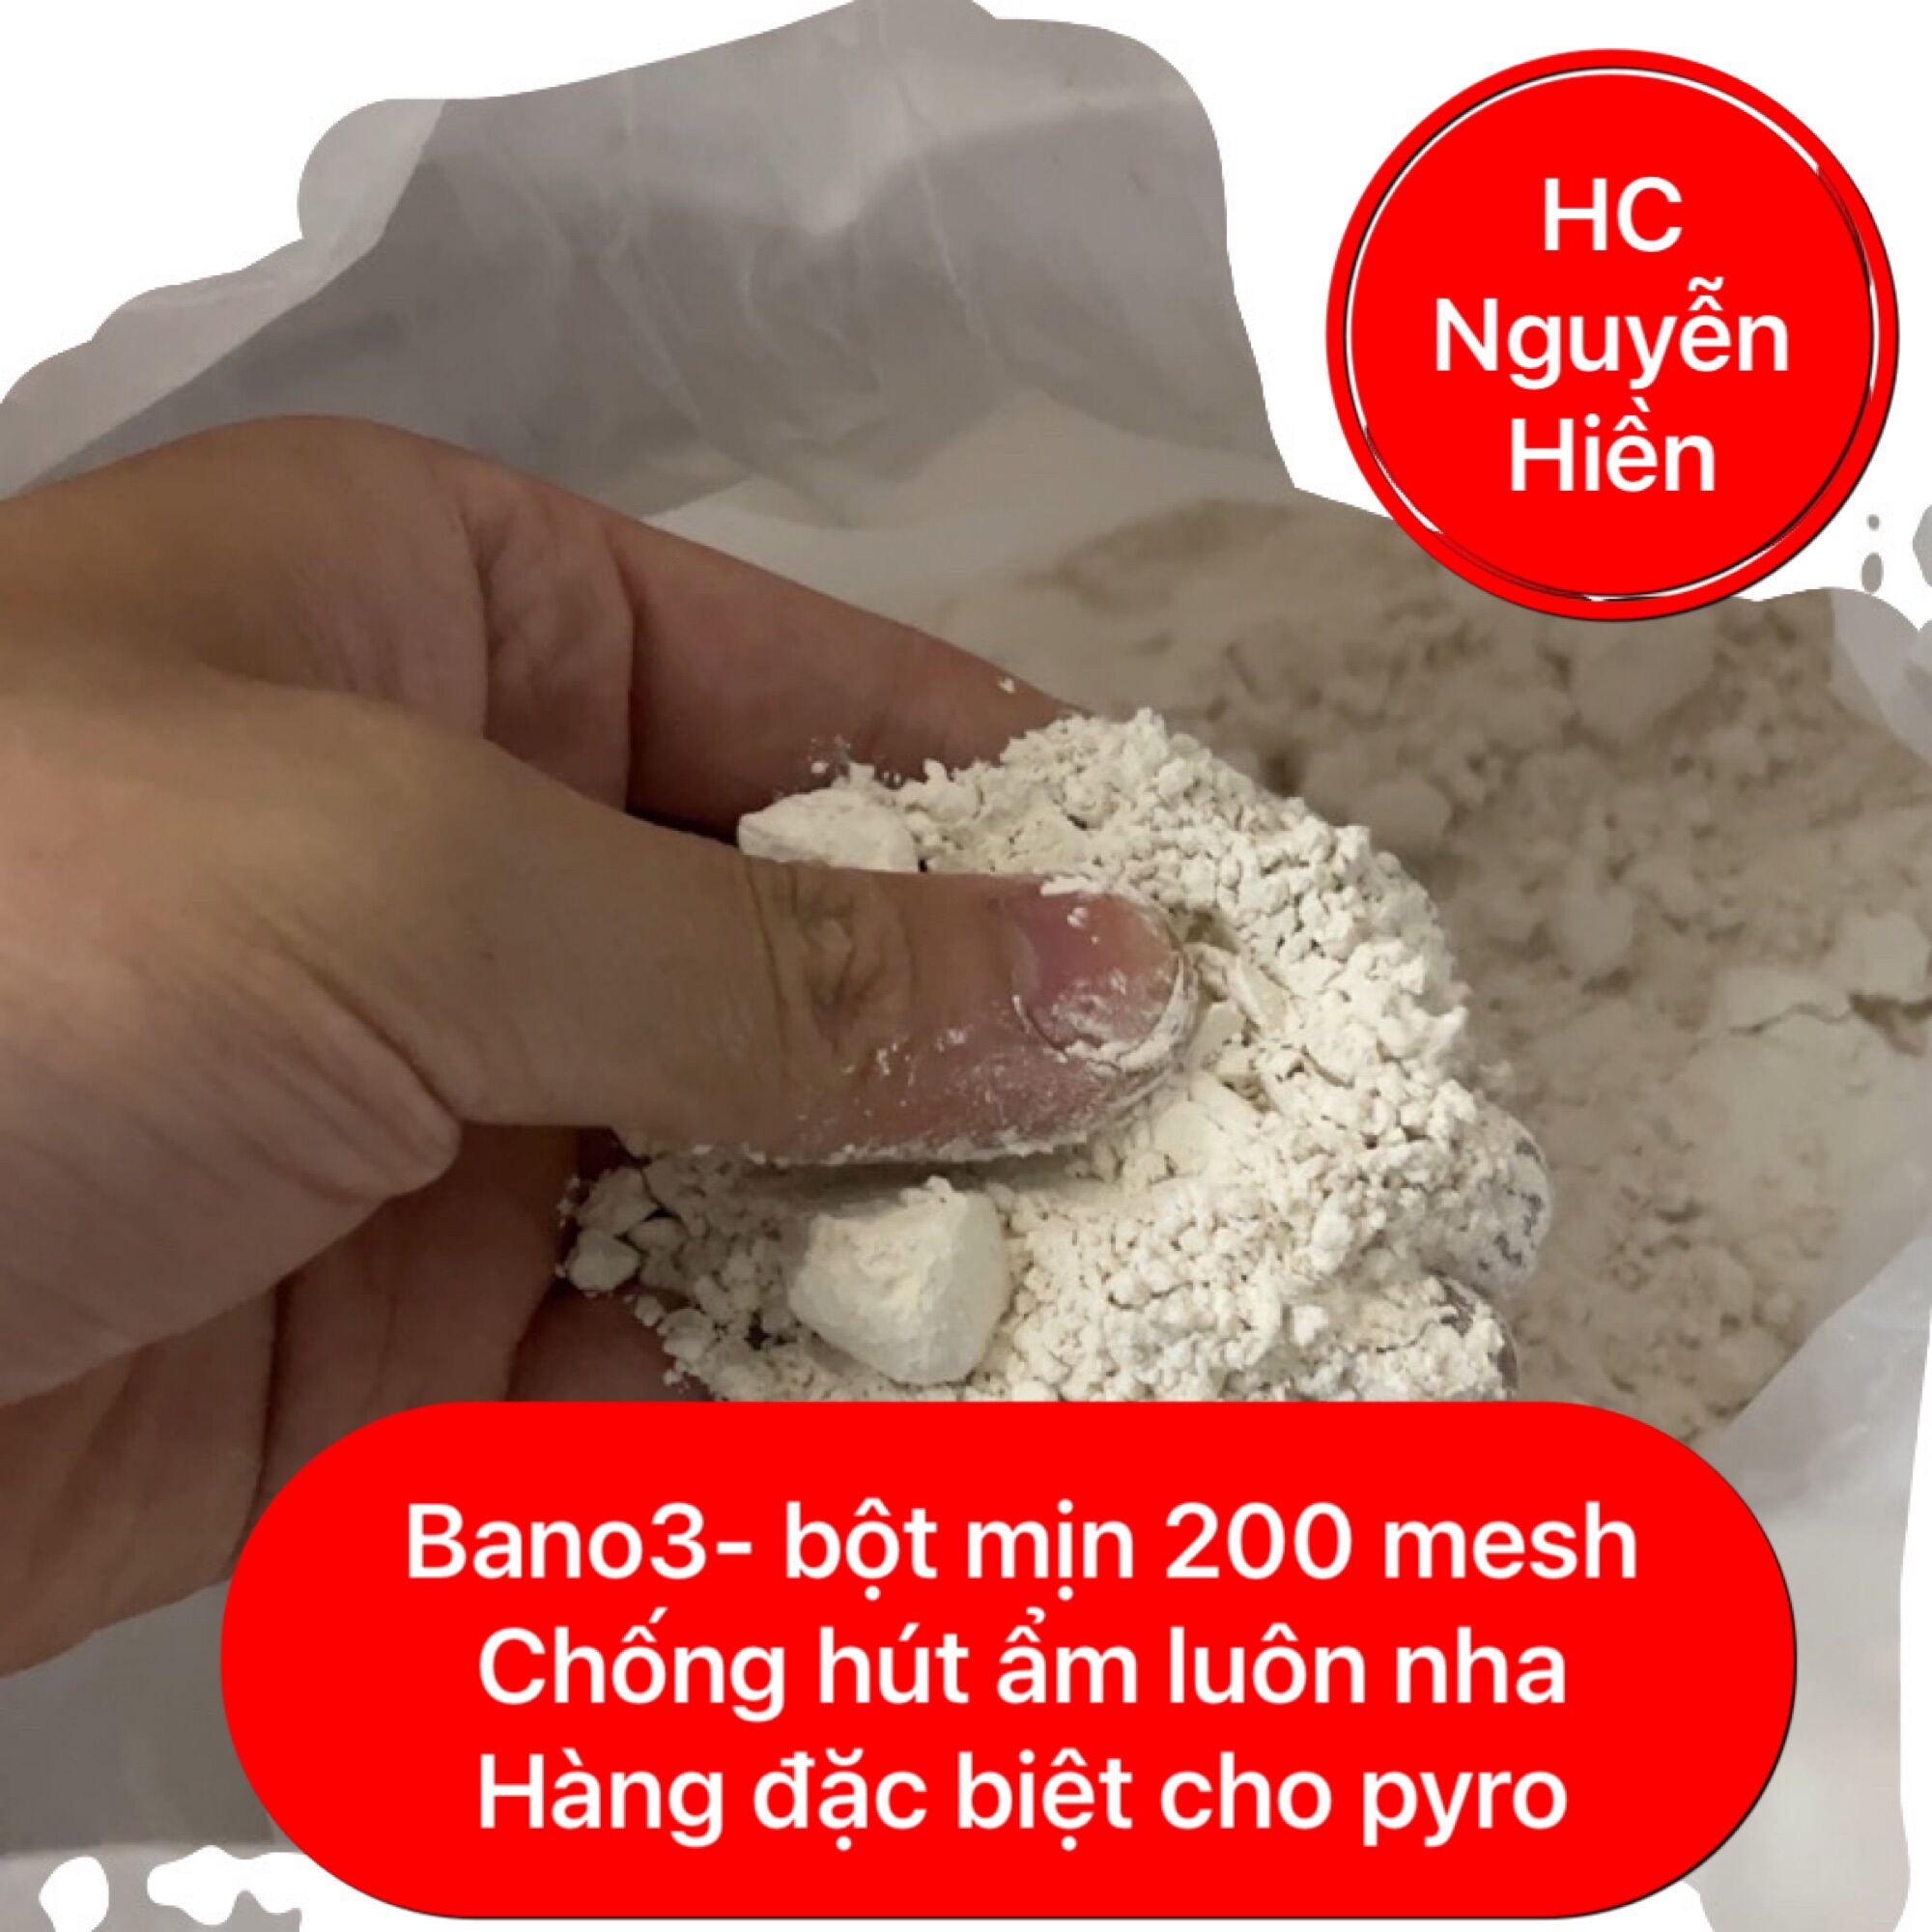 500g Bano3/Ba(no3)2- bari nitrat- hàng chuyên dụng cho pyro- chống hút ẩm